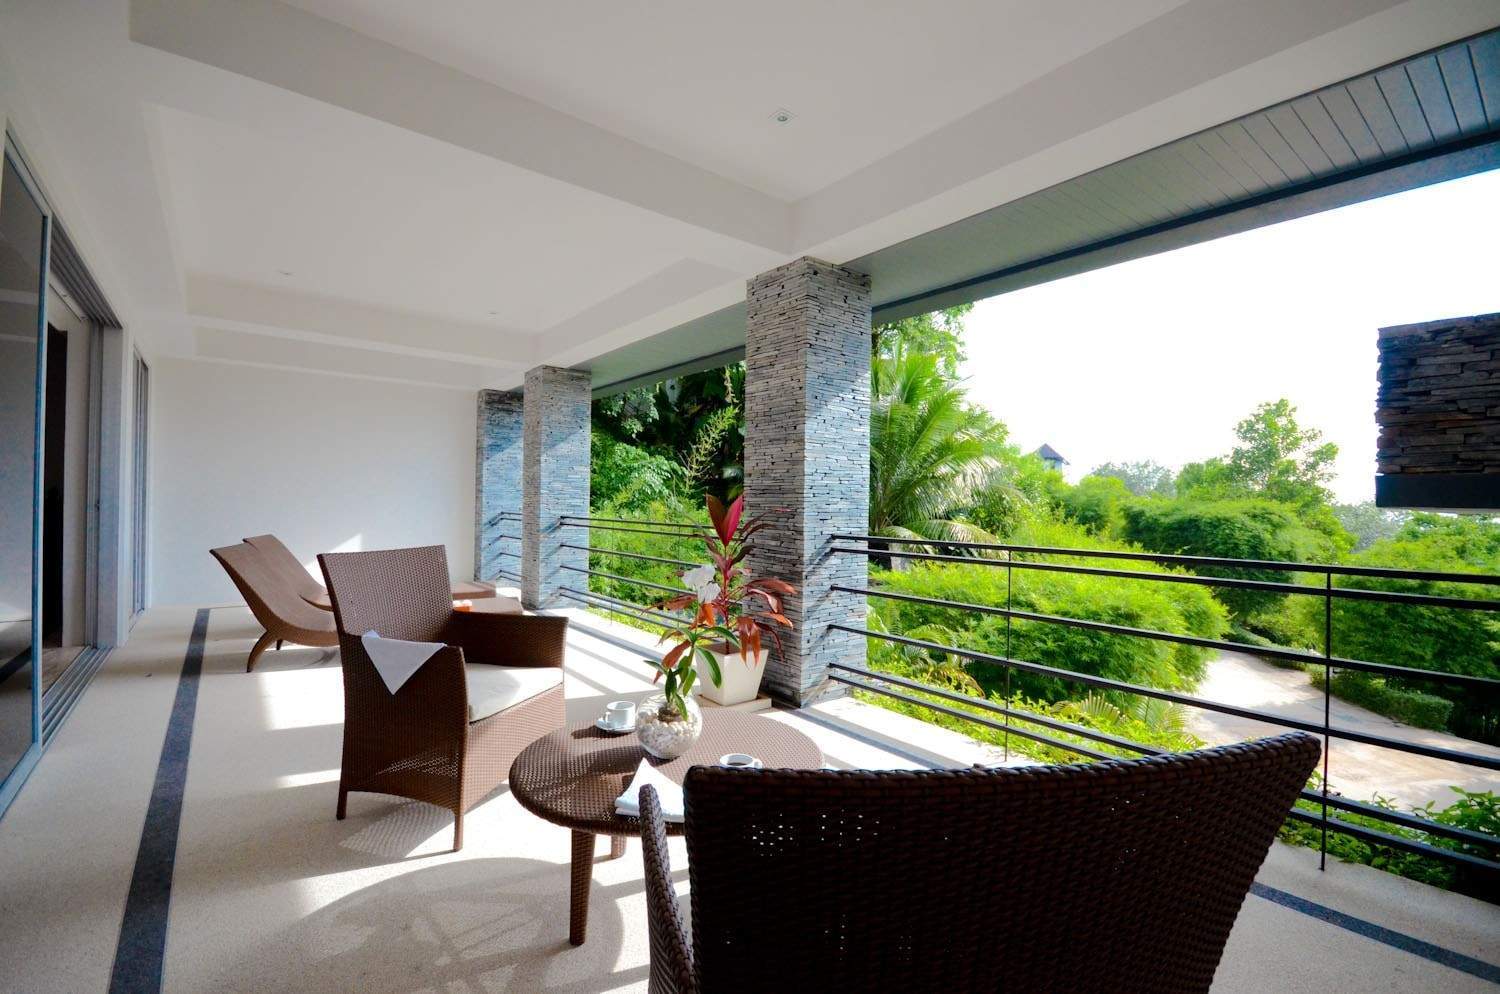 Rent villa Overlooking Layan 20, Thailand, Phuket, Bang Tao | Villacarte